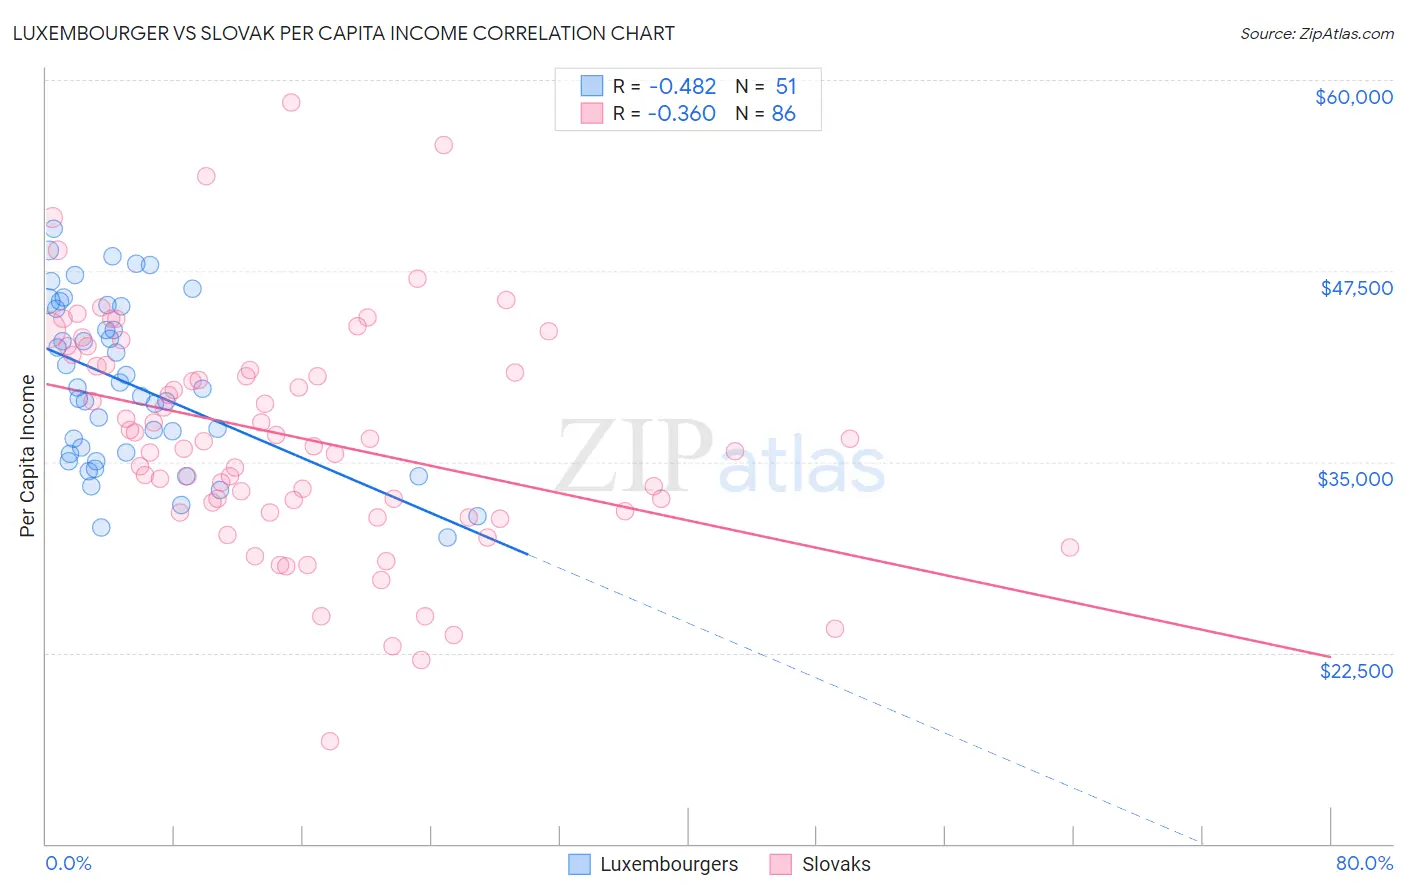 Luxembourger vs Slovak Per Capita Income